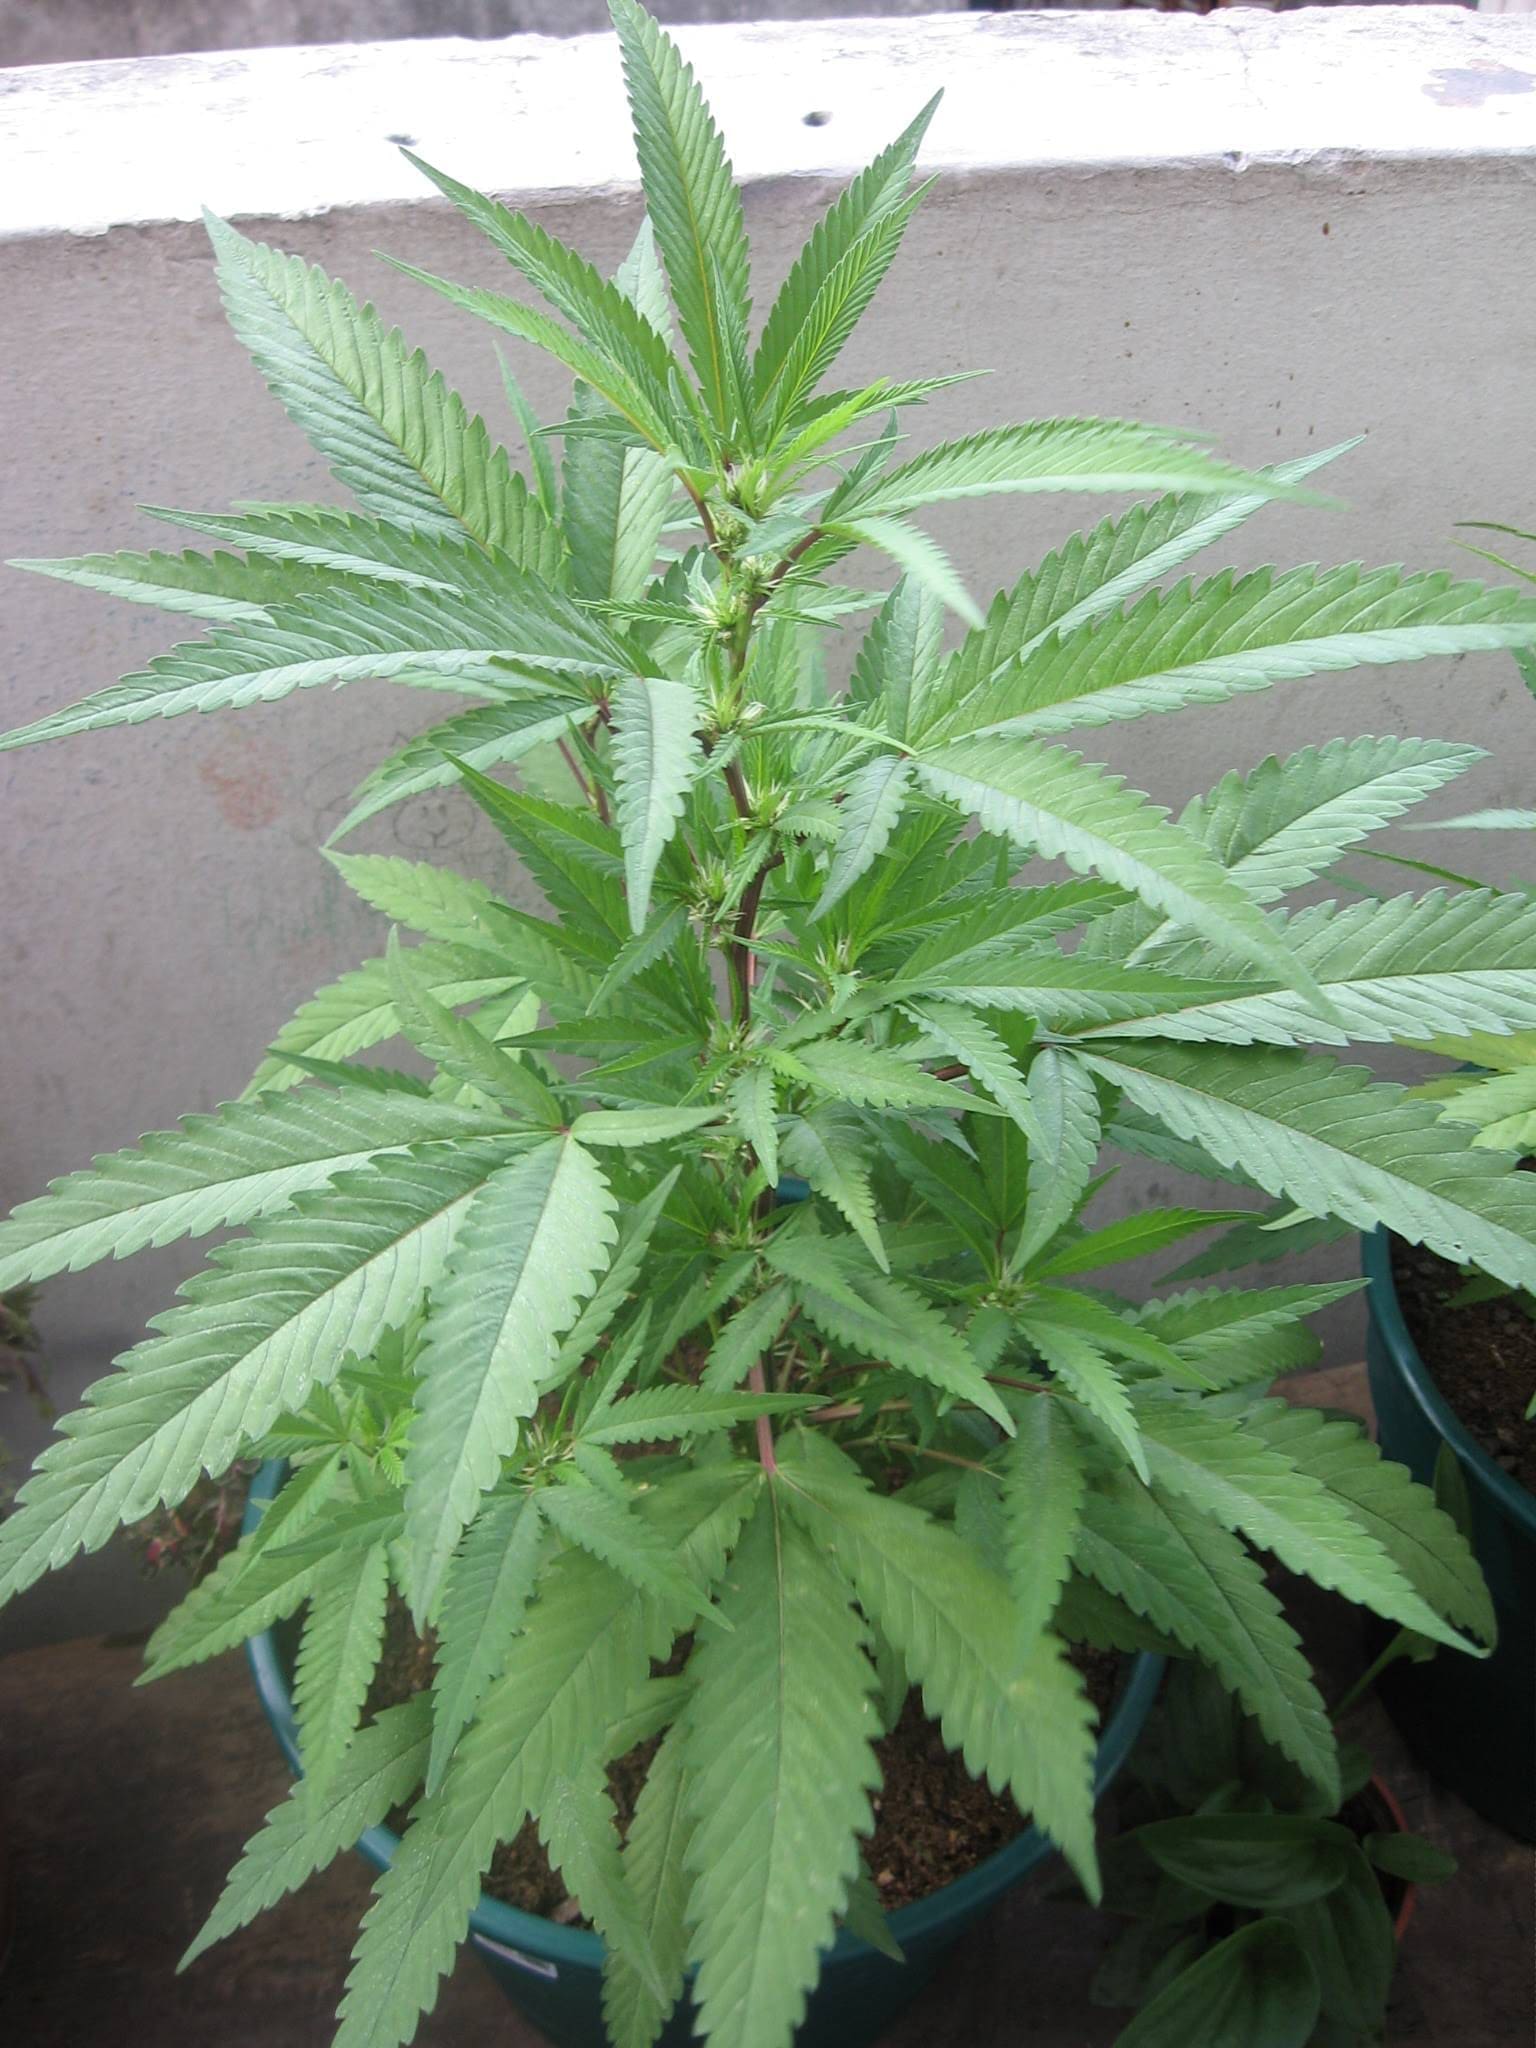 Cannabis in vegetative stage - week 6